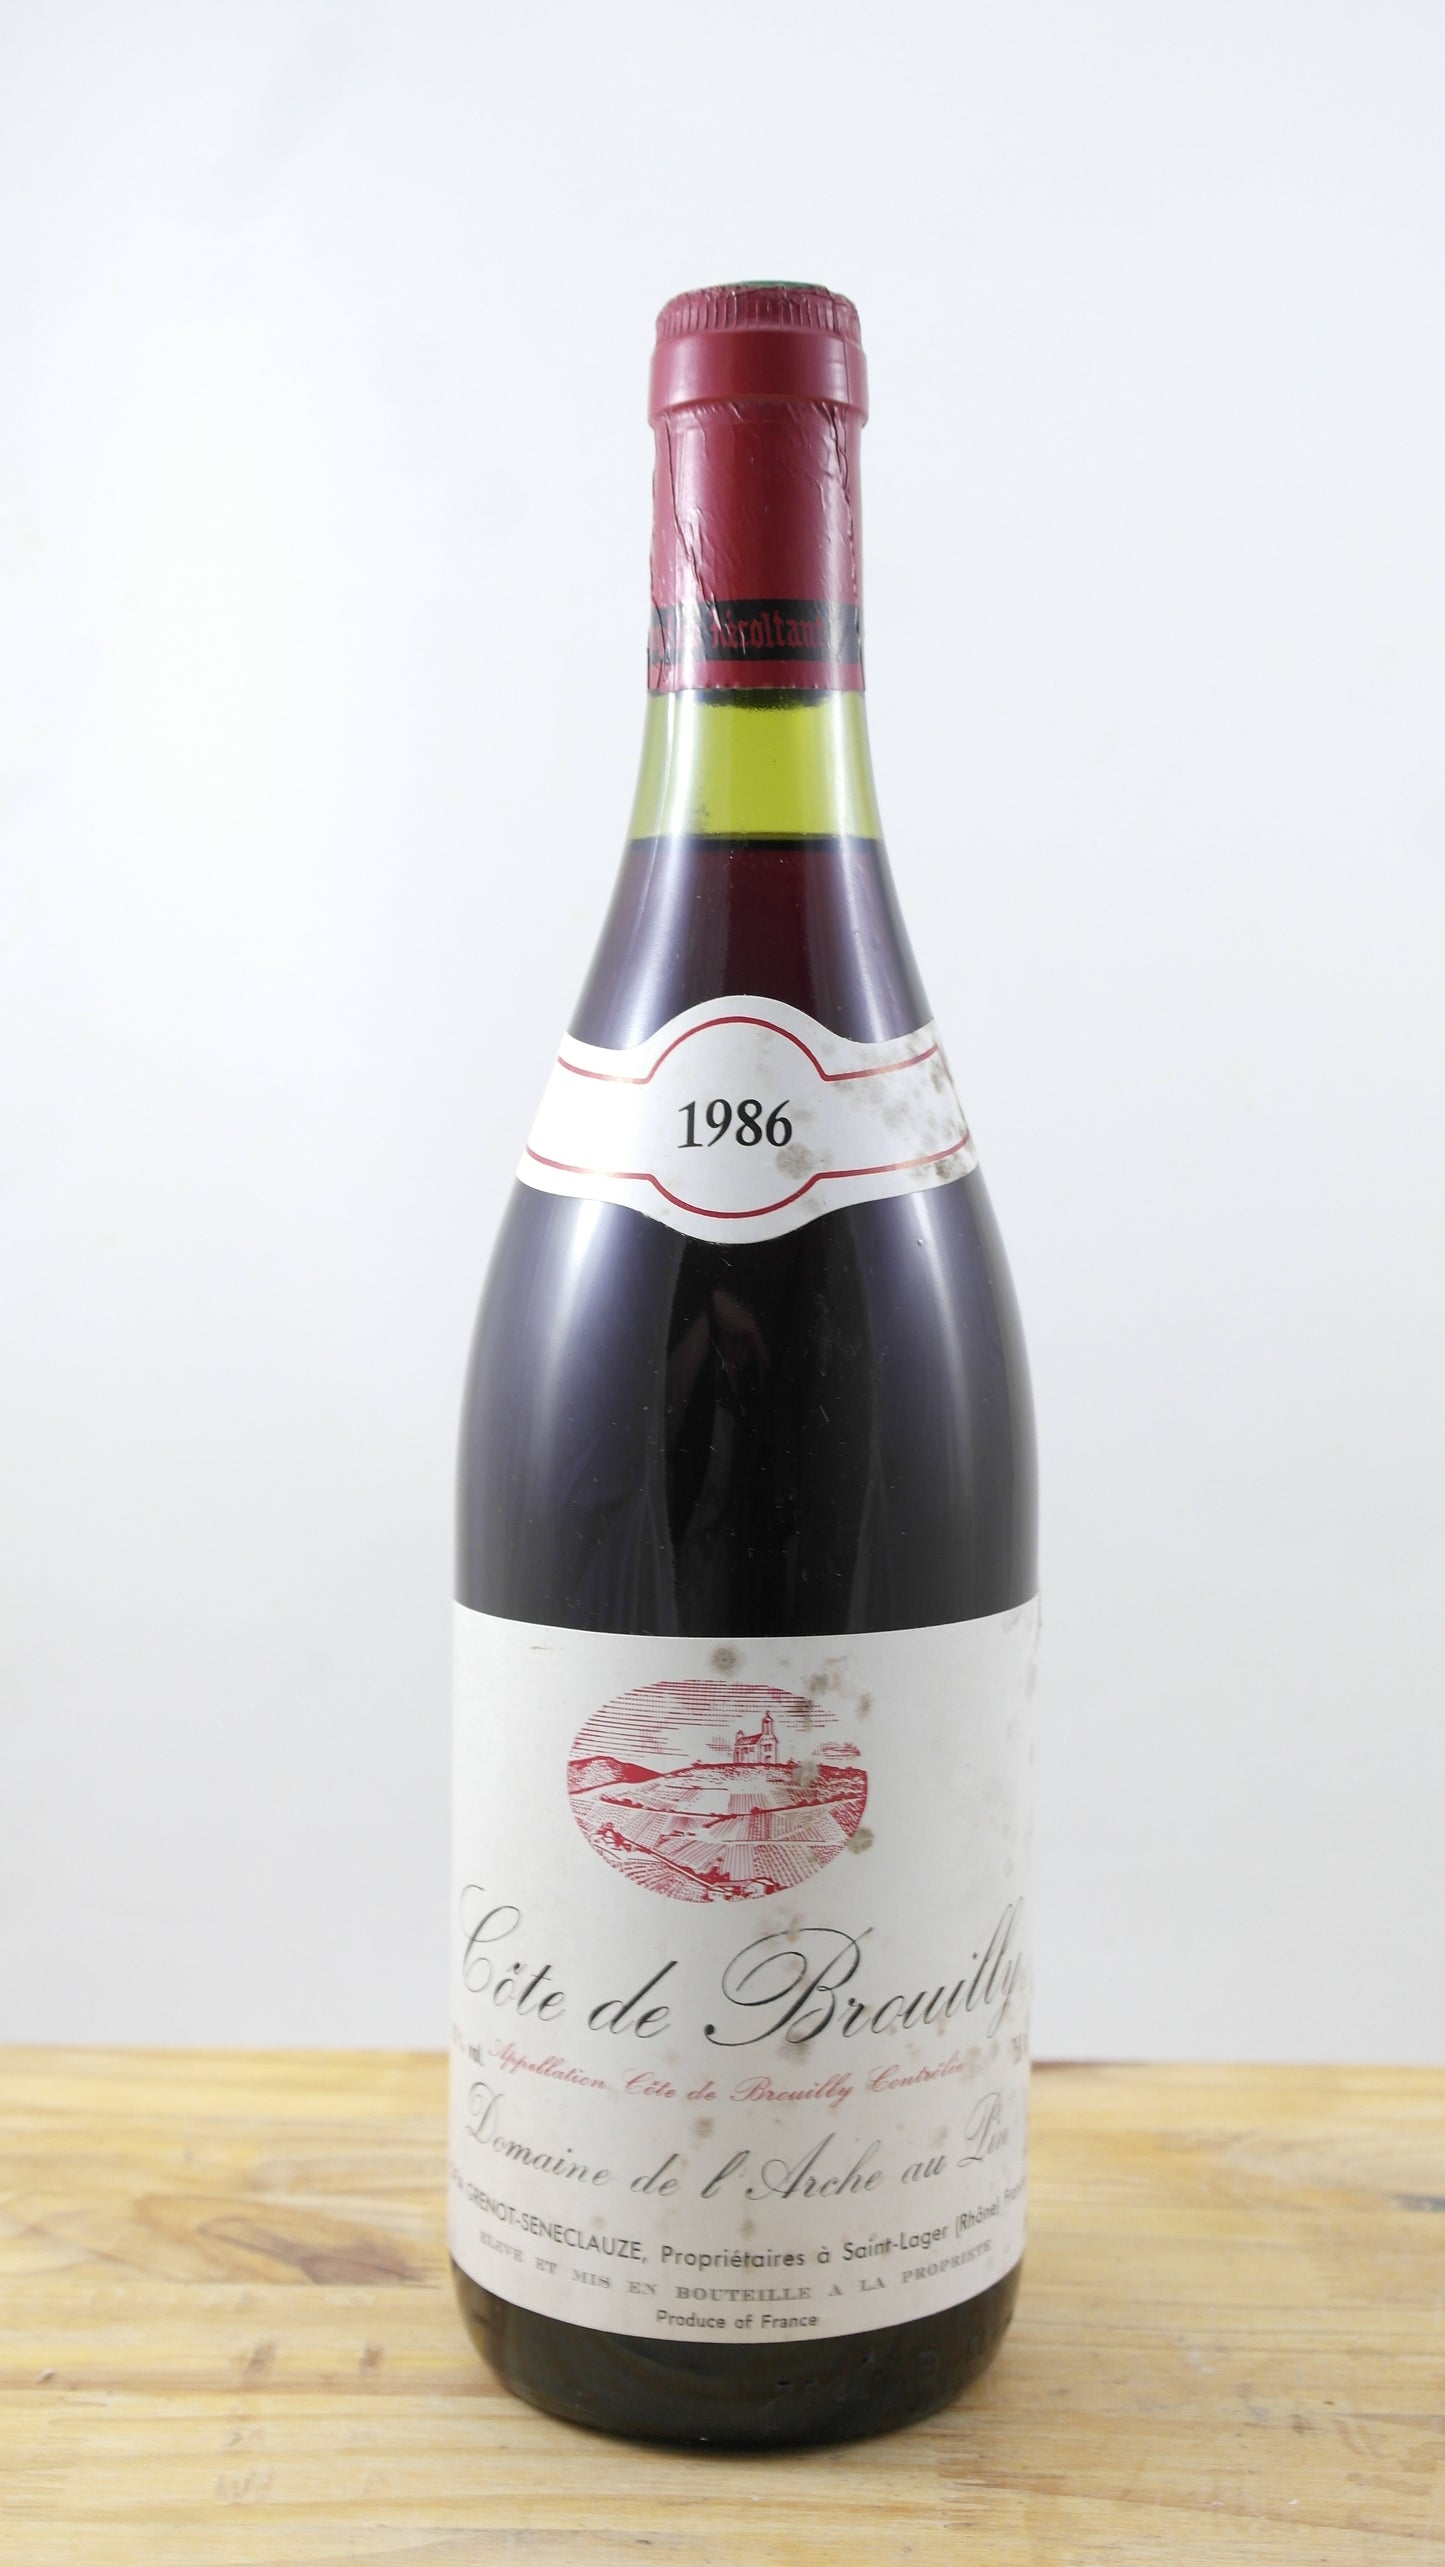 Côte de Brouilly Domaine de l’Arche au Pin EA Vin 1986